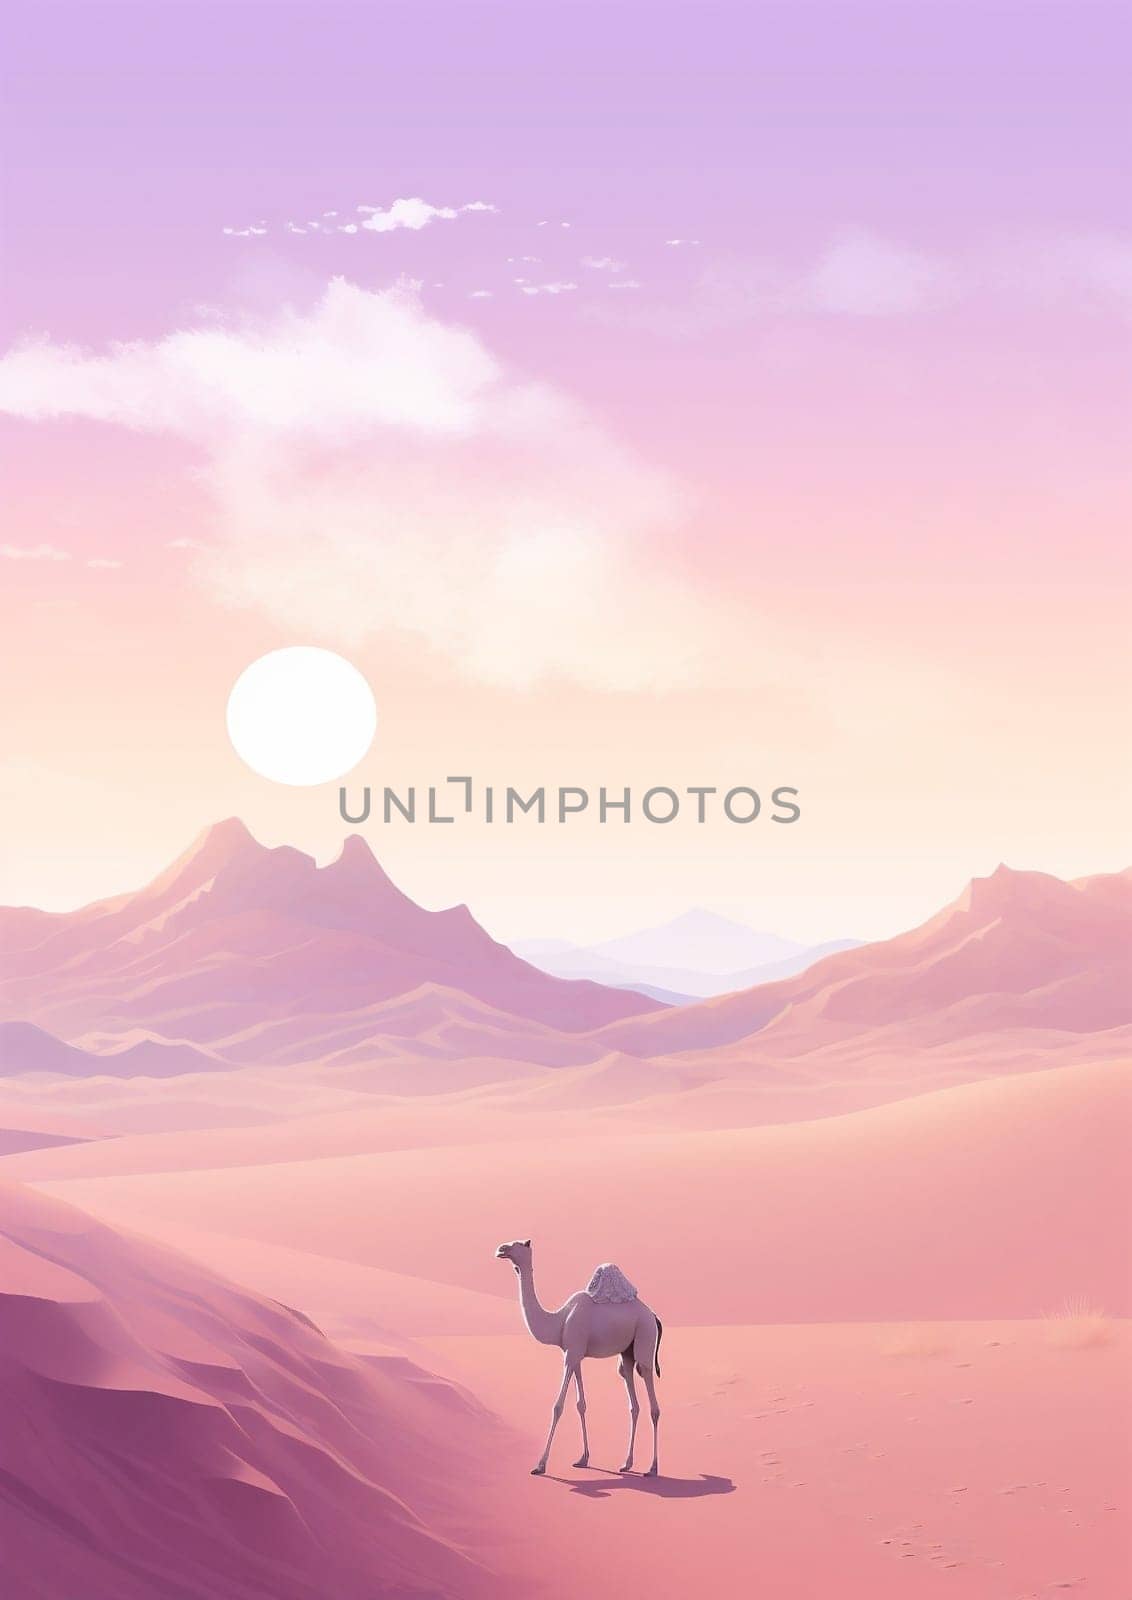 Art sahara mountain egypt desert sunset sand africa camel wild dune landscape sky background illustration travel summer nature